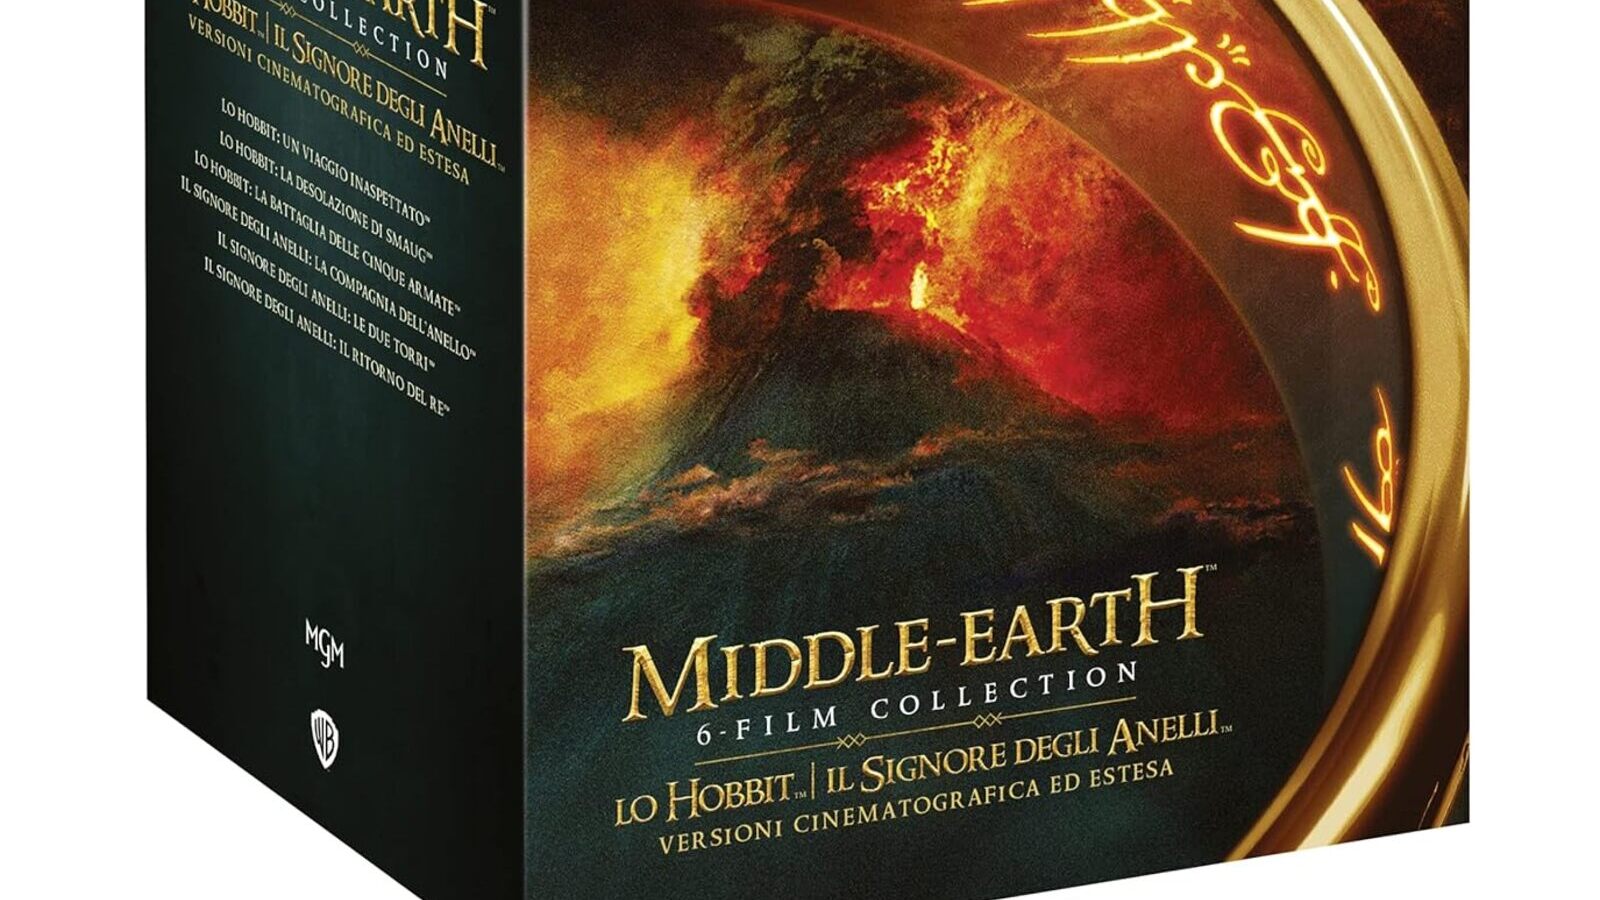 Il signore degli anelli: la Middle Earth Vanilla Edition (4K Ultra HD + Blu- Ray) è